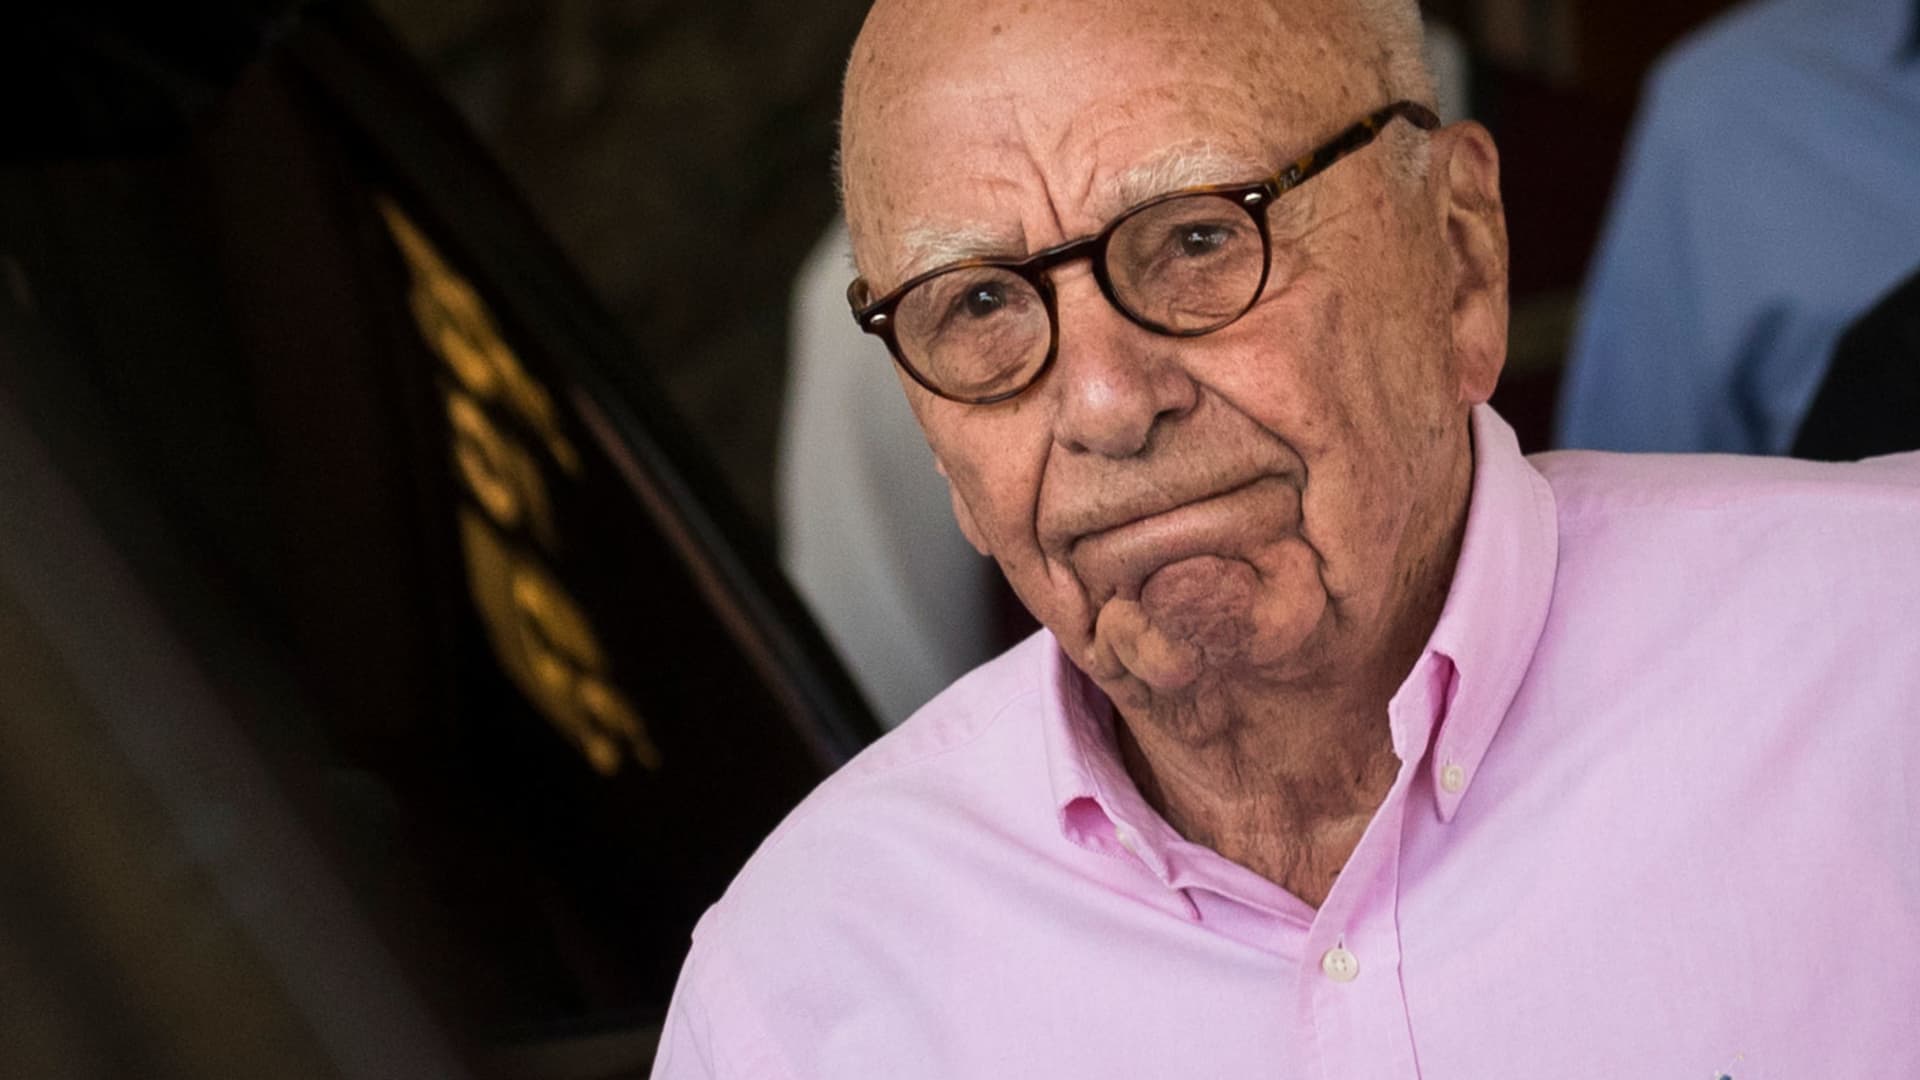 Rupert Murdoch bricht den Fusionsvorschlag von Fox News ab